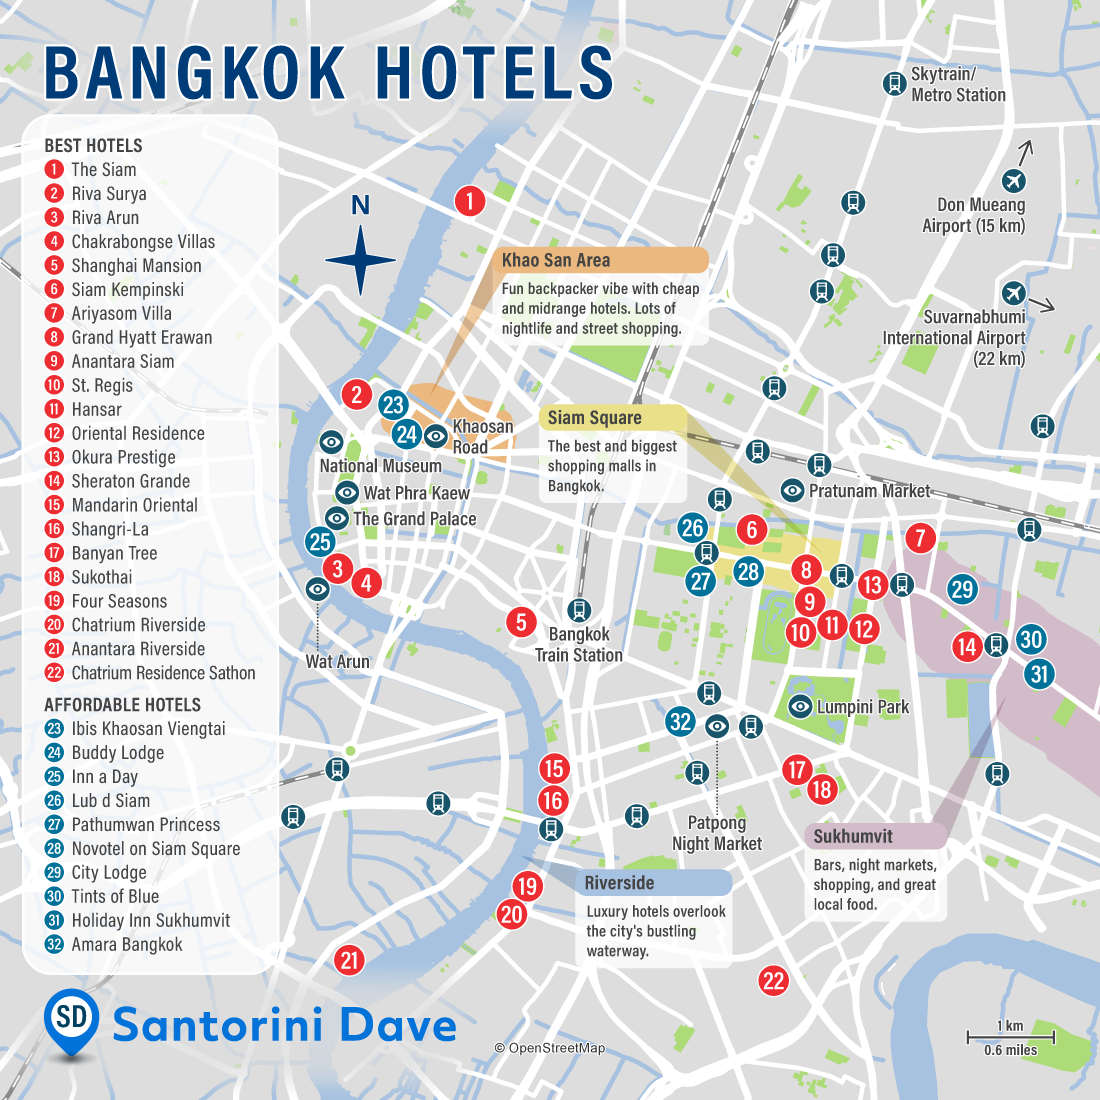 Map of Bangkok hotels and neighborhoods.